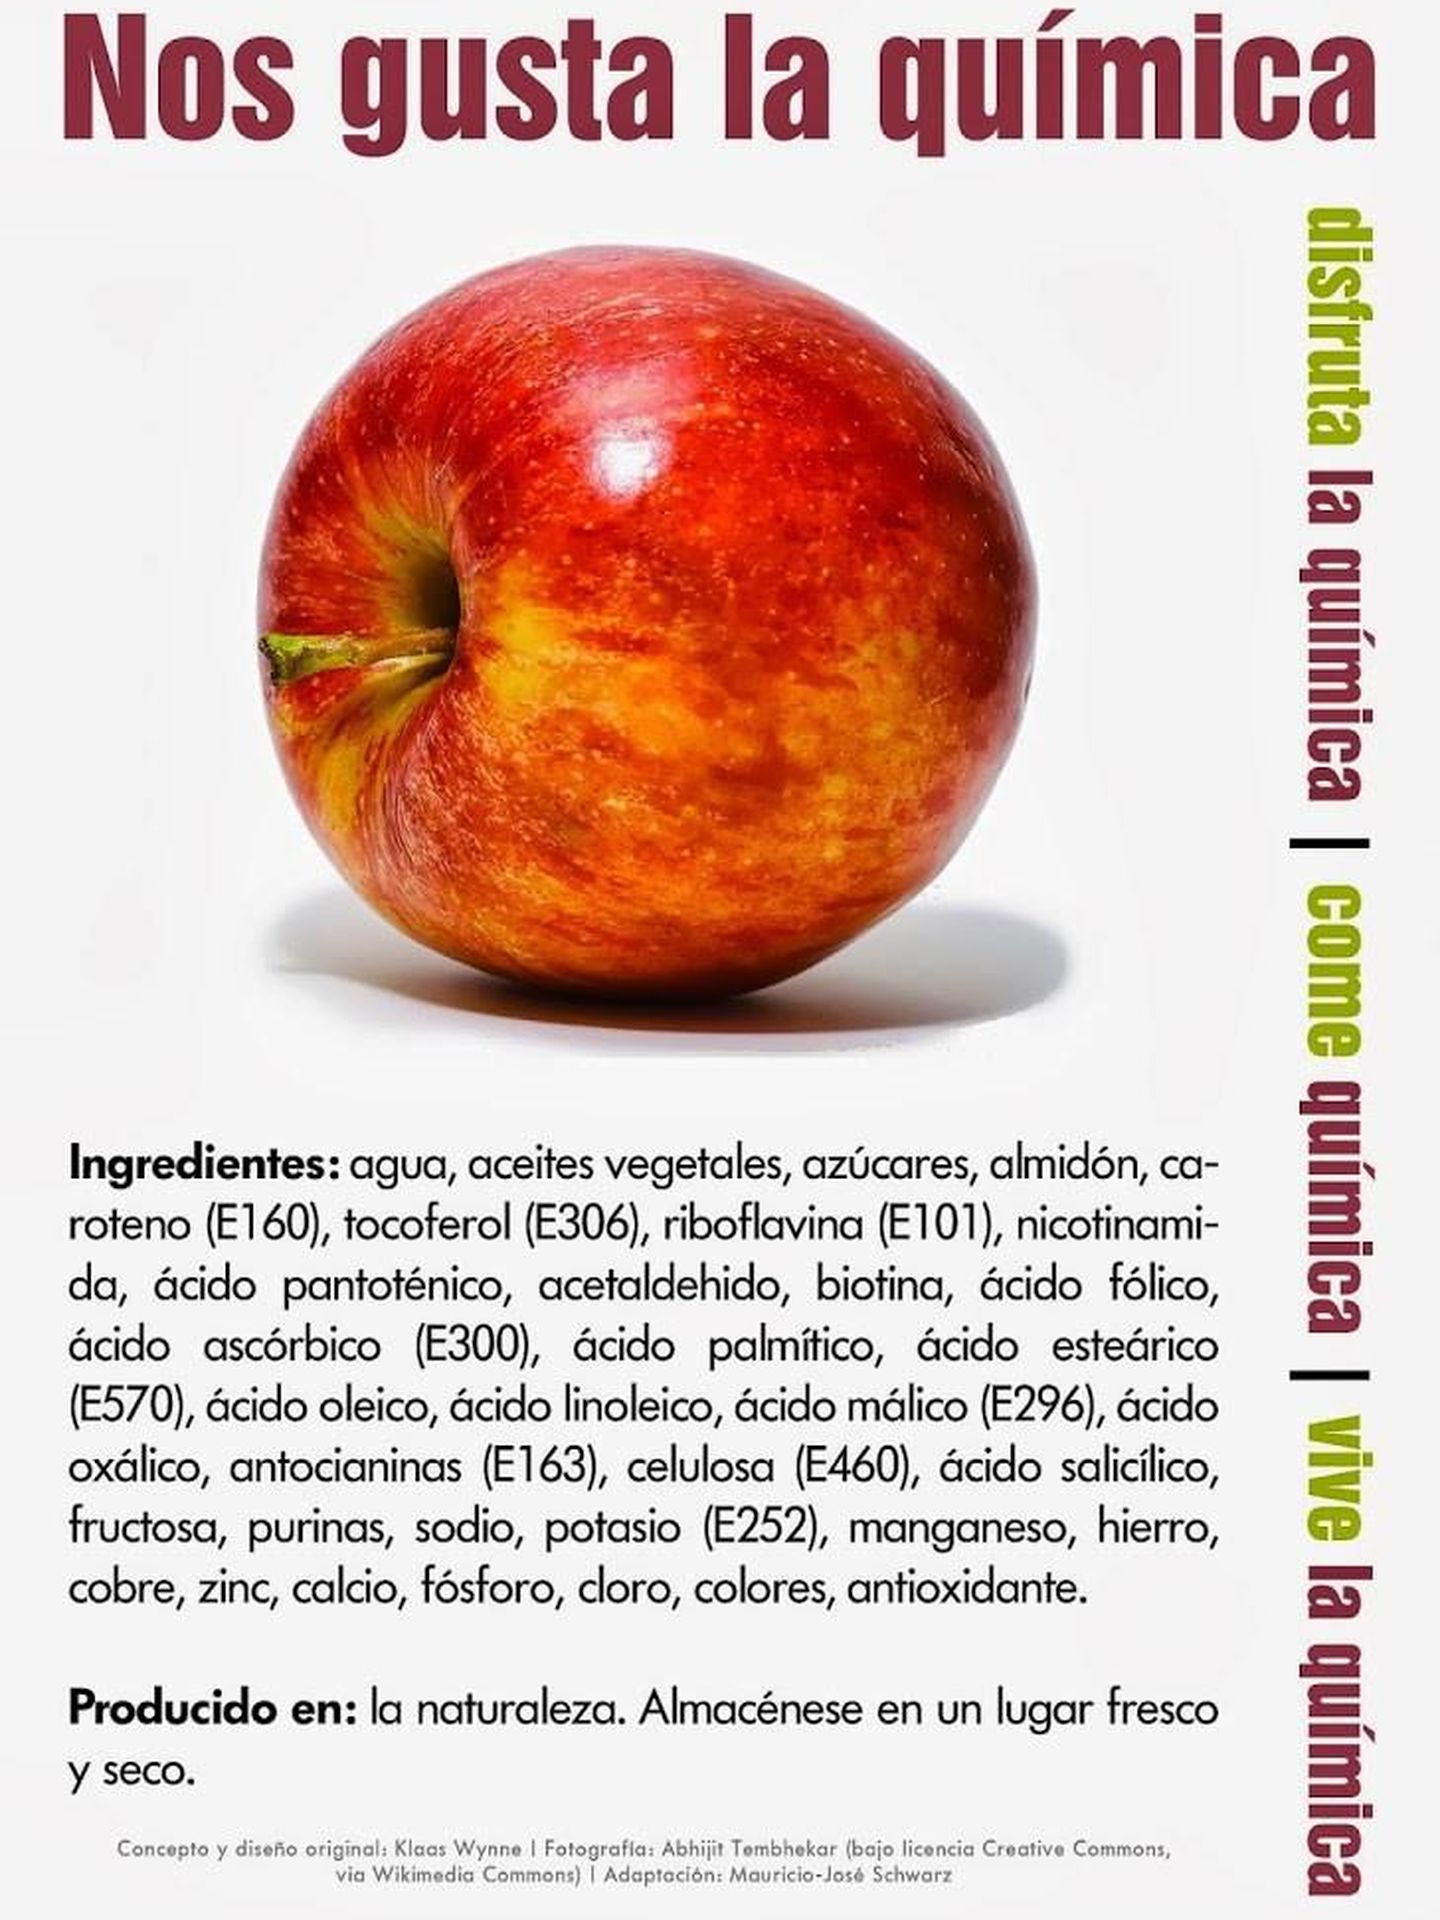 Composición química de la manzana.